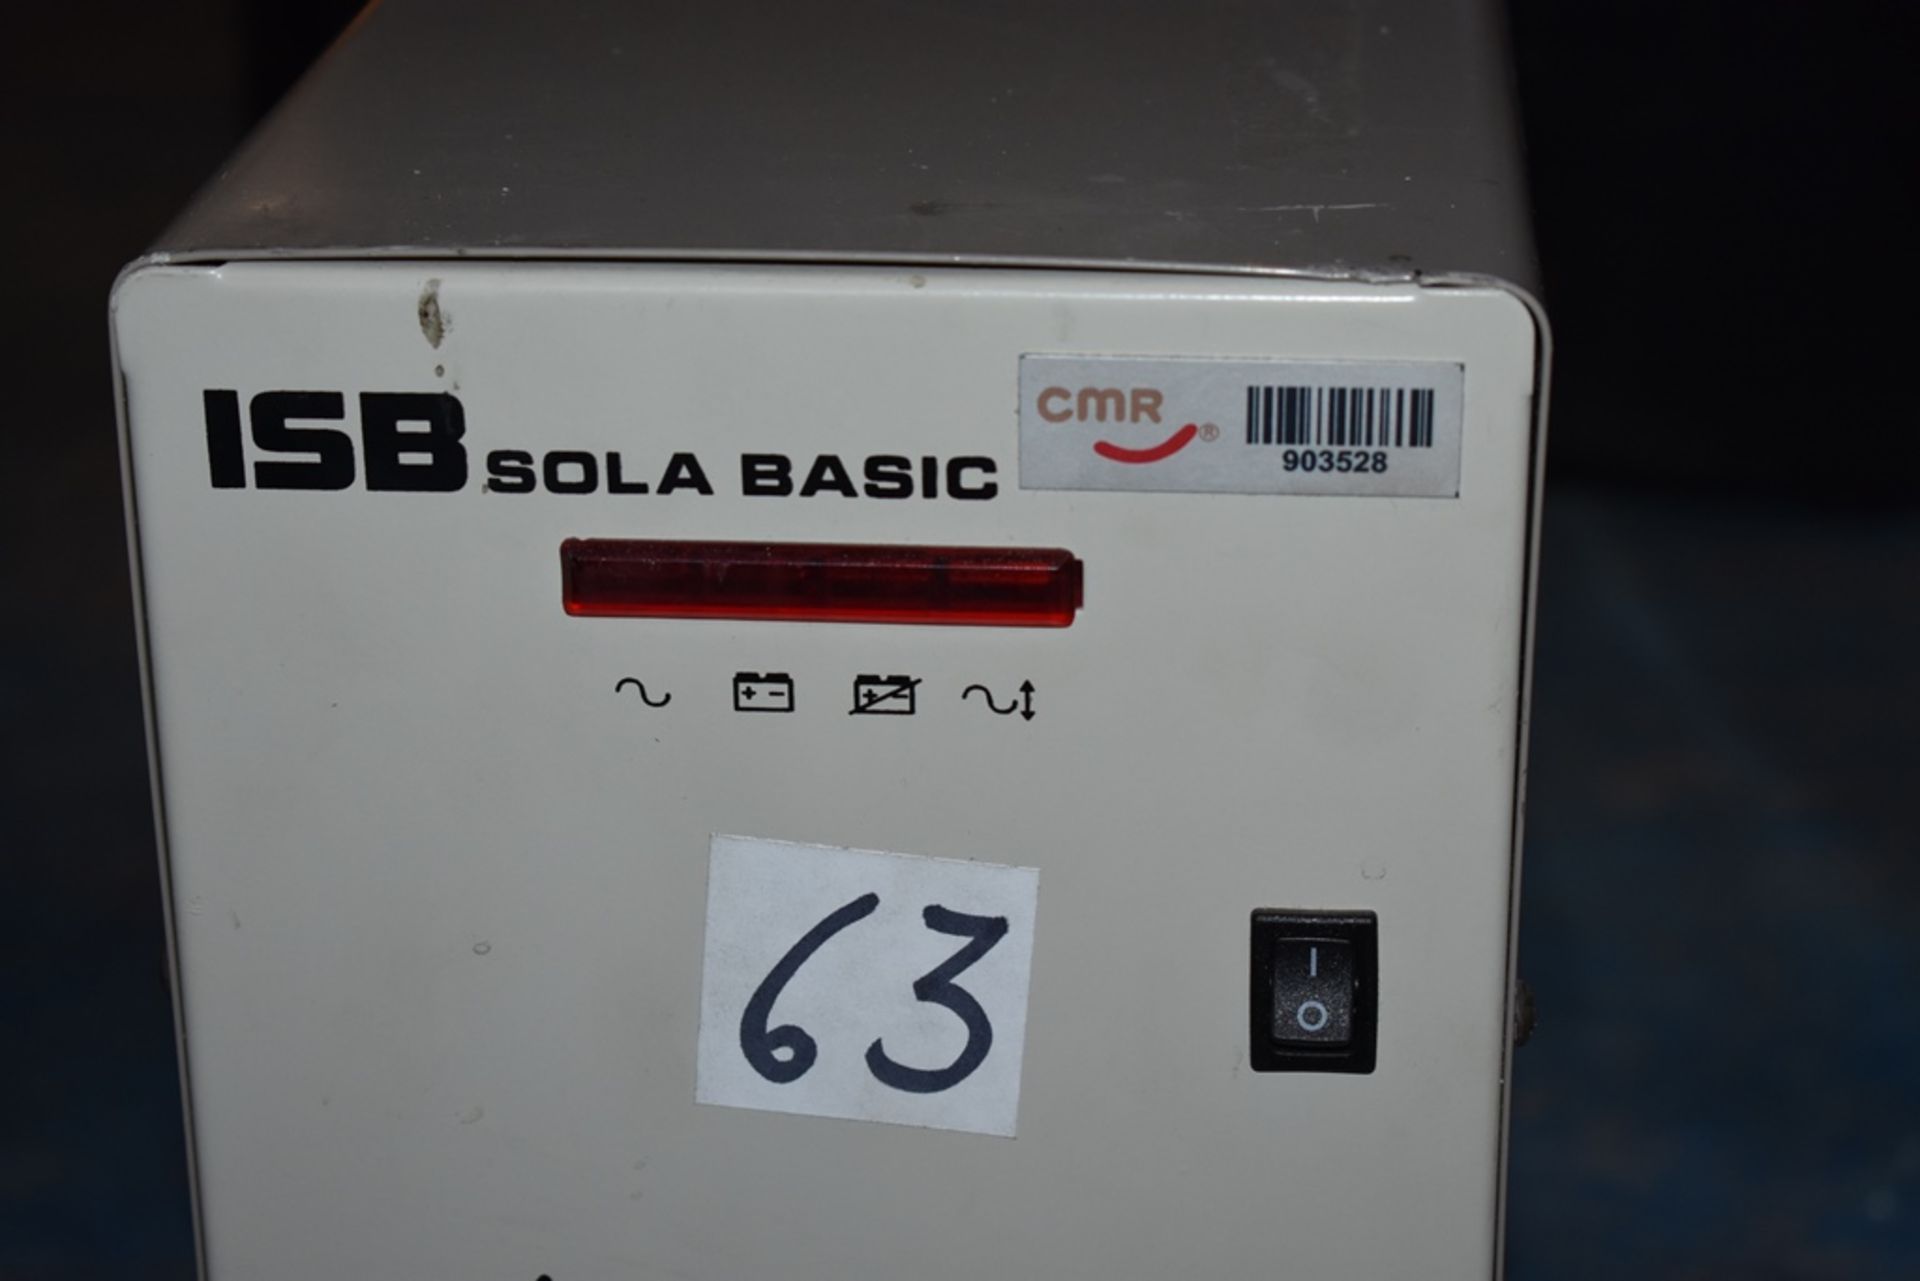 Dos reguladores de voltaje marca ISB Solabasic, modelo: XR-21-202, Series: E18F02675, E18H01516 - Image 7 of 17